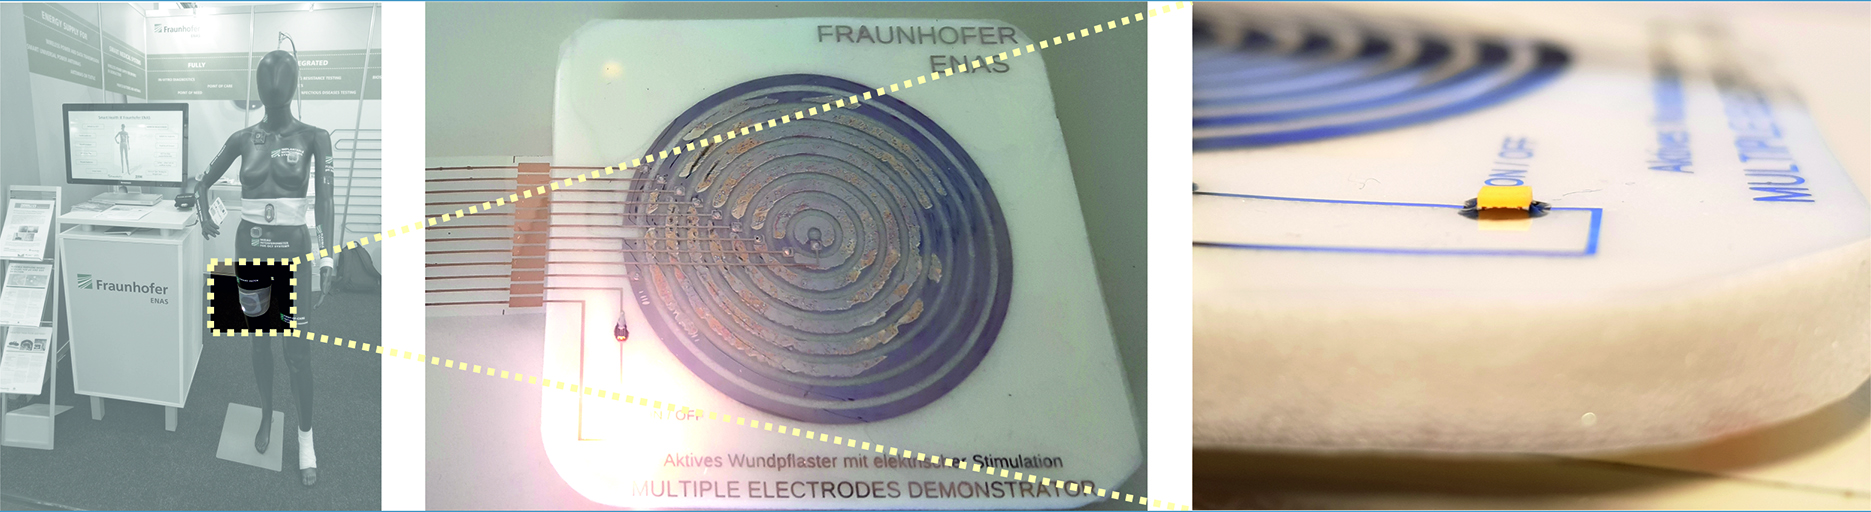 Technologiedemonstrator für ein elektrisch aktives Wundpflaster mit gedruckten Elektroden auf flexiblen Substraten.